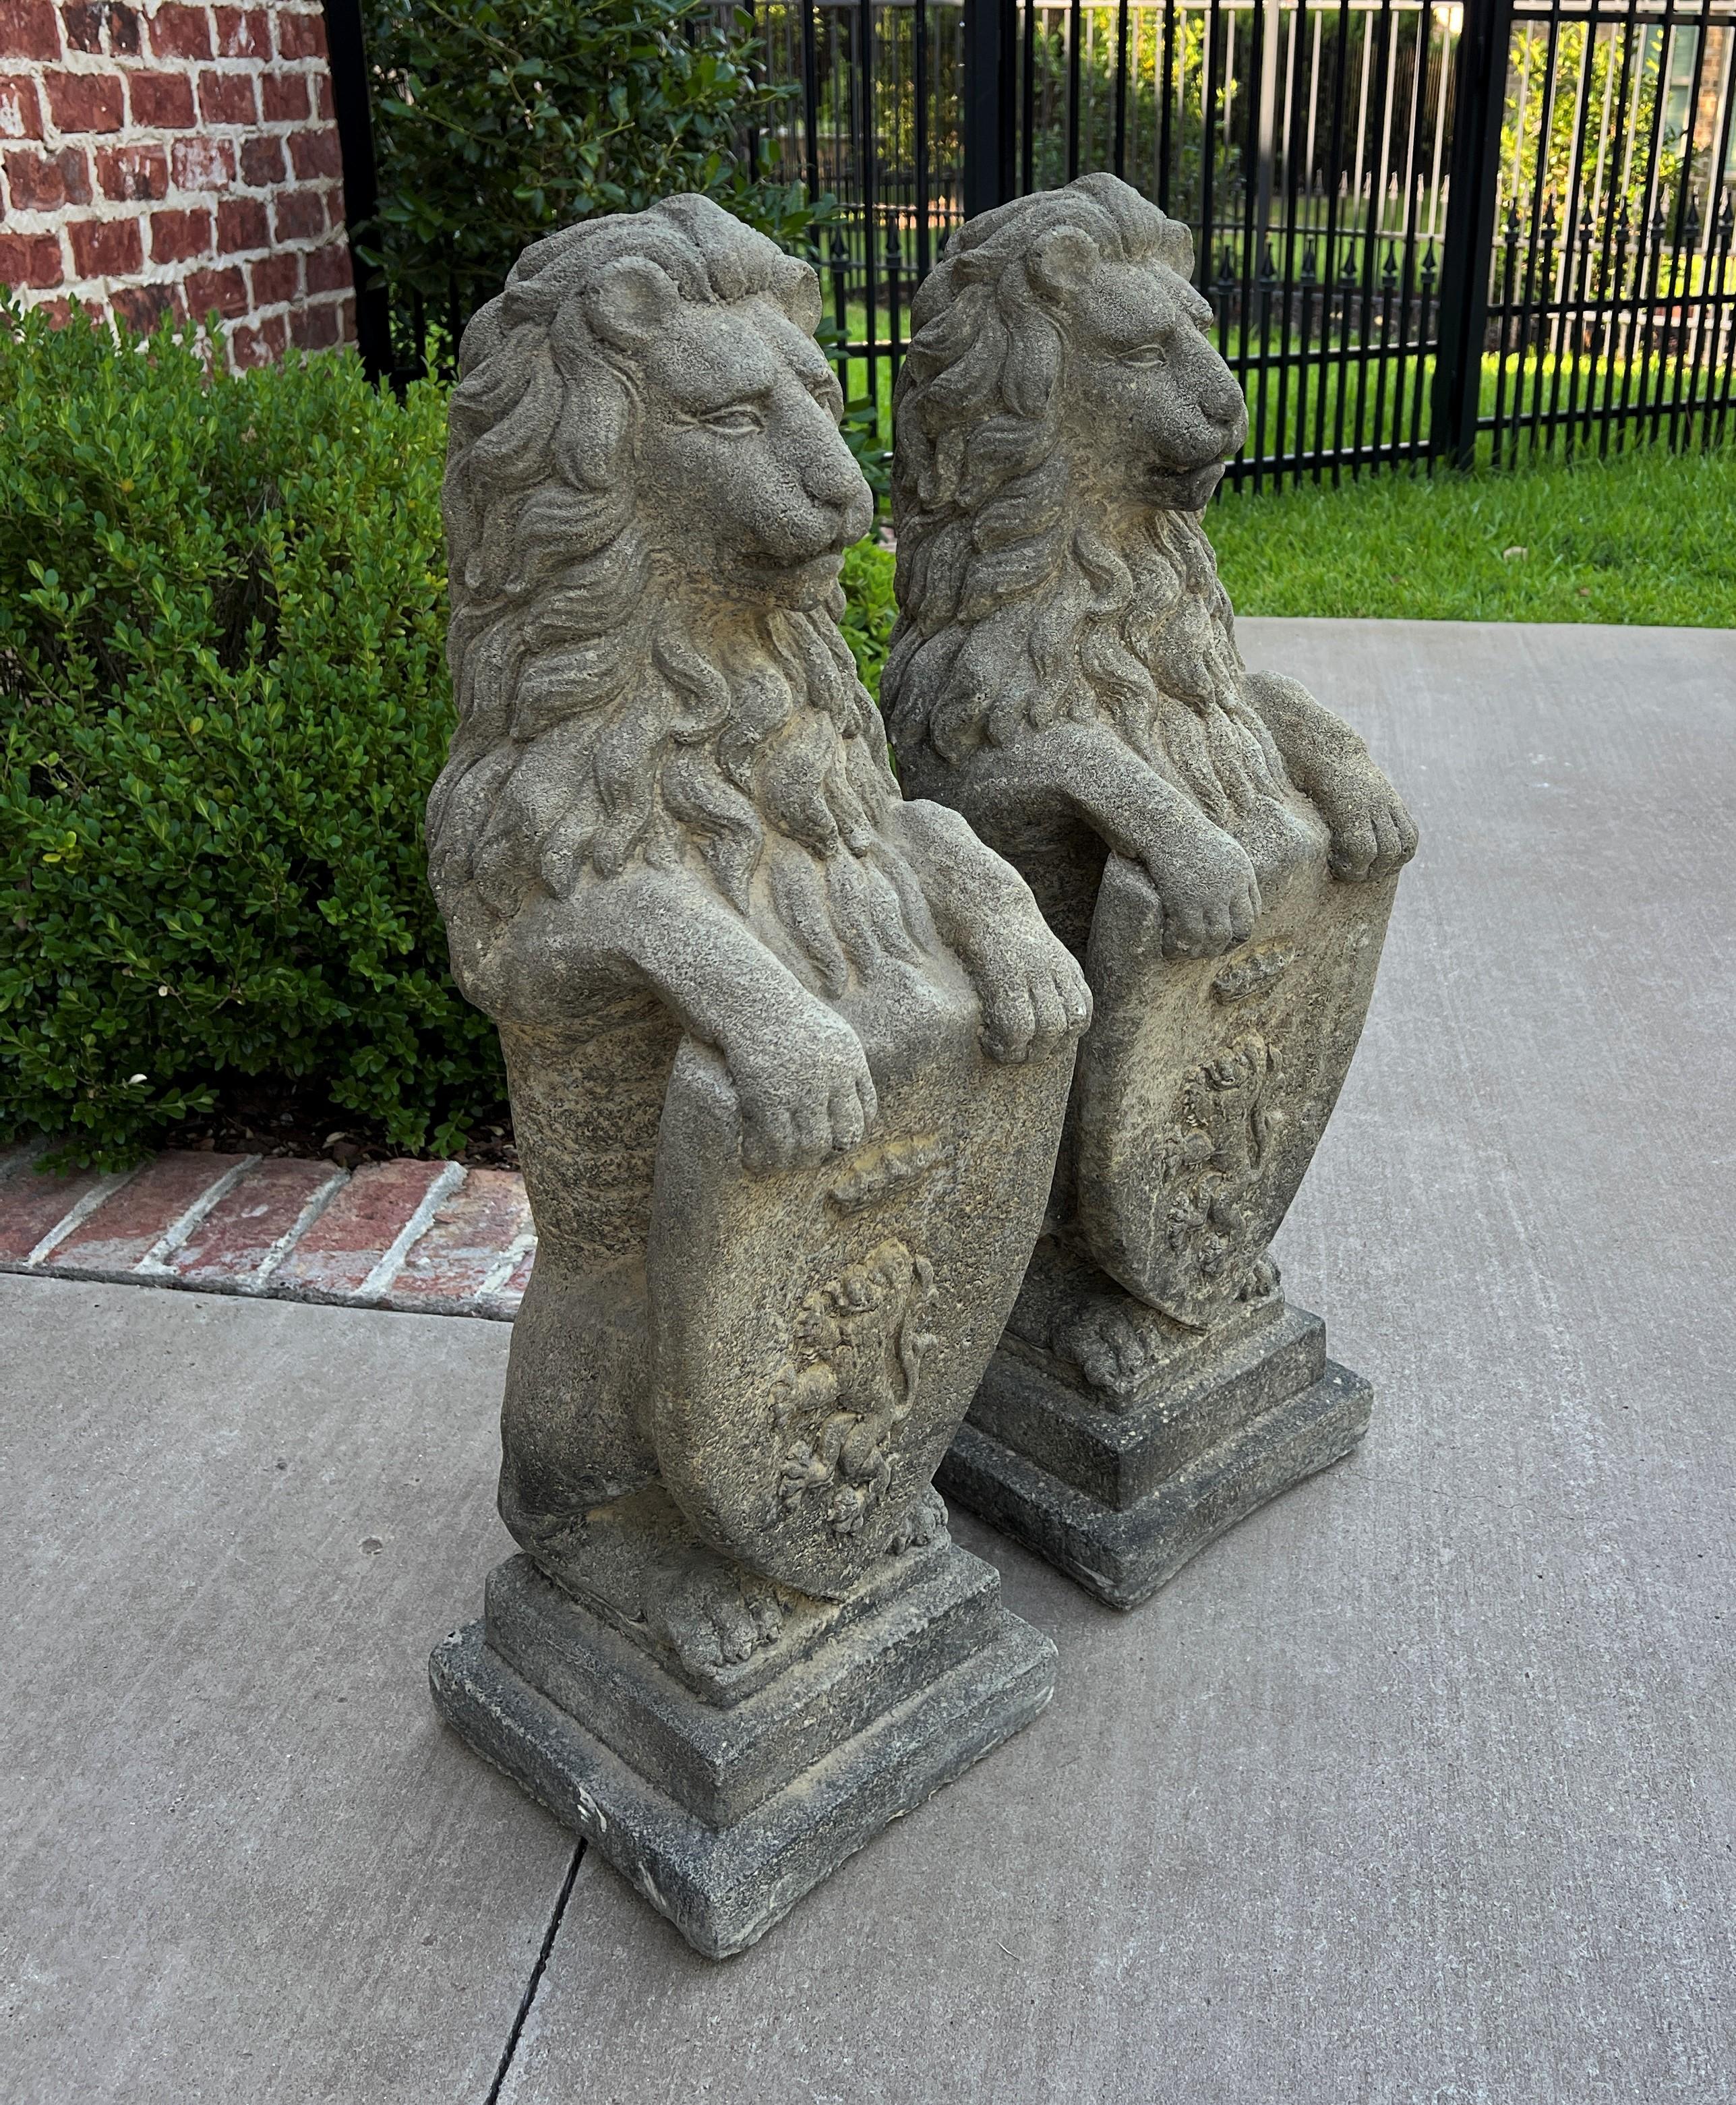 Vintage English Statues Garden Figures Lions Shield Cast Stone Pair #2 1